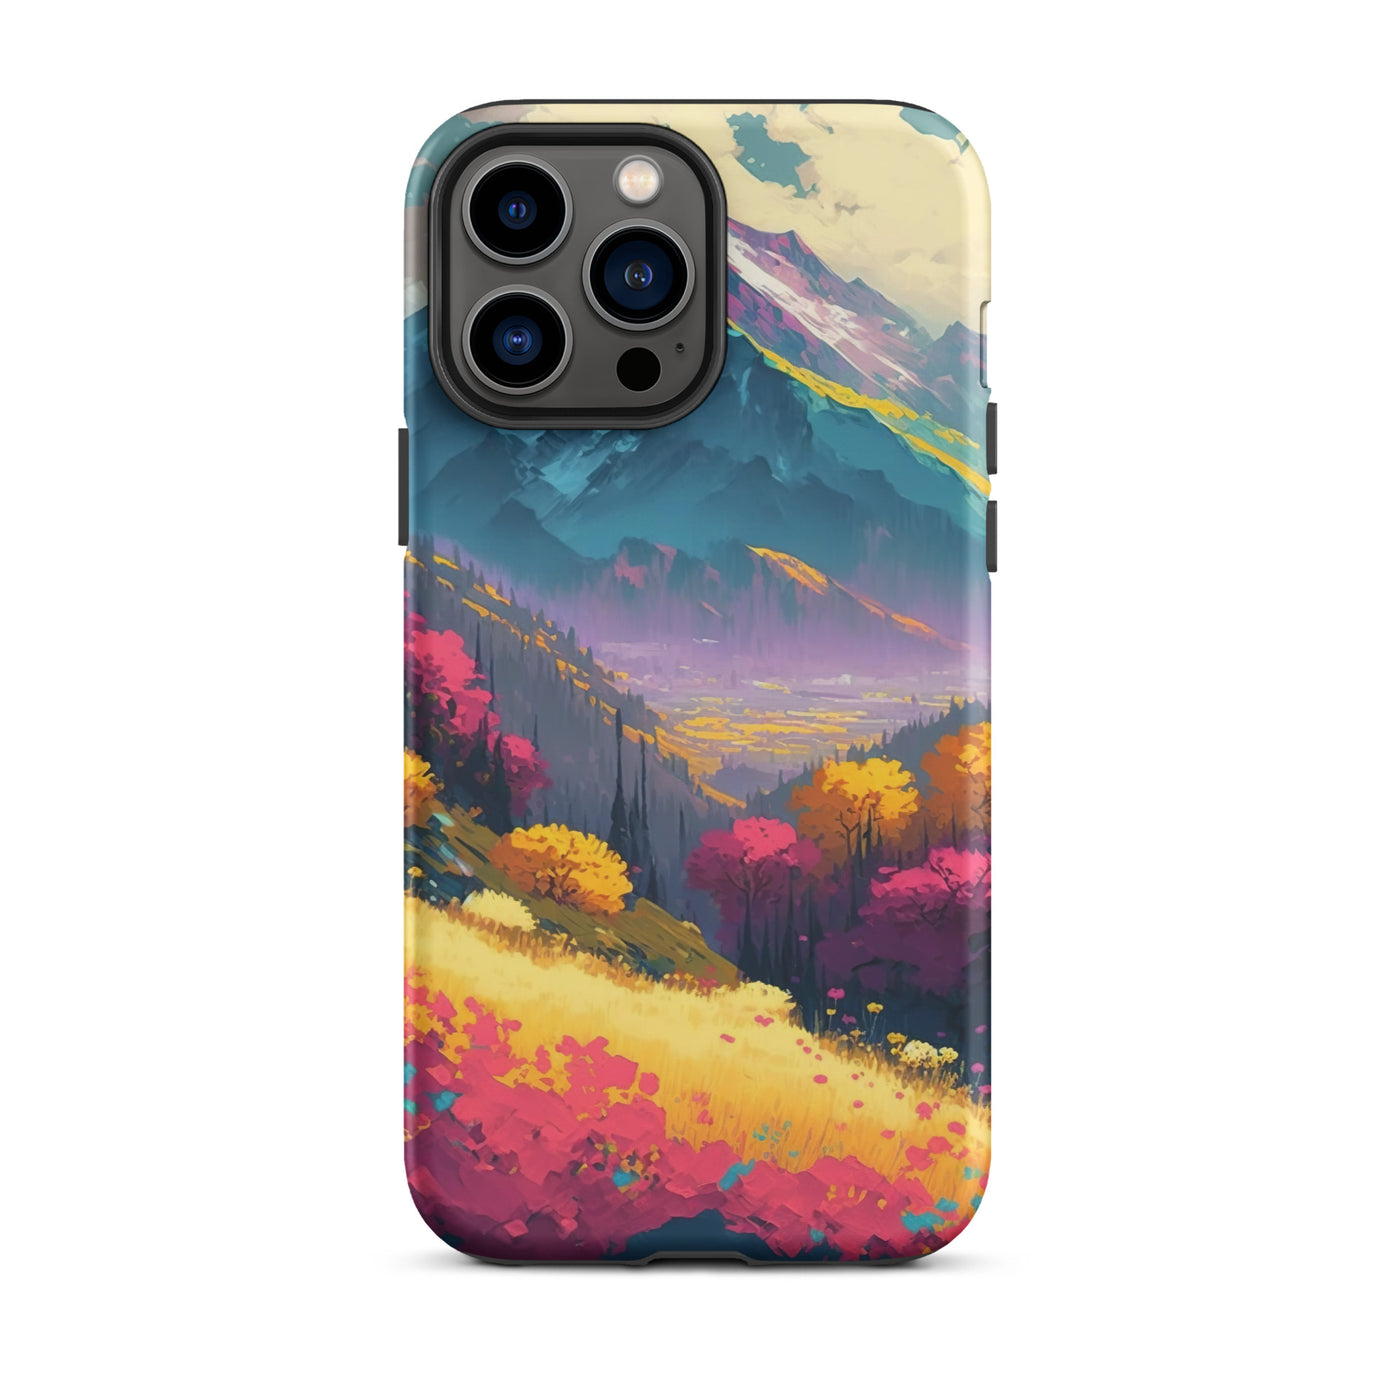 Berge, pinke und gelbe Bäume, sowie Blumen - Farbige Malerei - iPhone Schutzhülle (robust) berge xxx iPhone 13 Pro Max